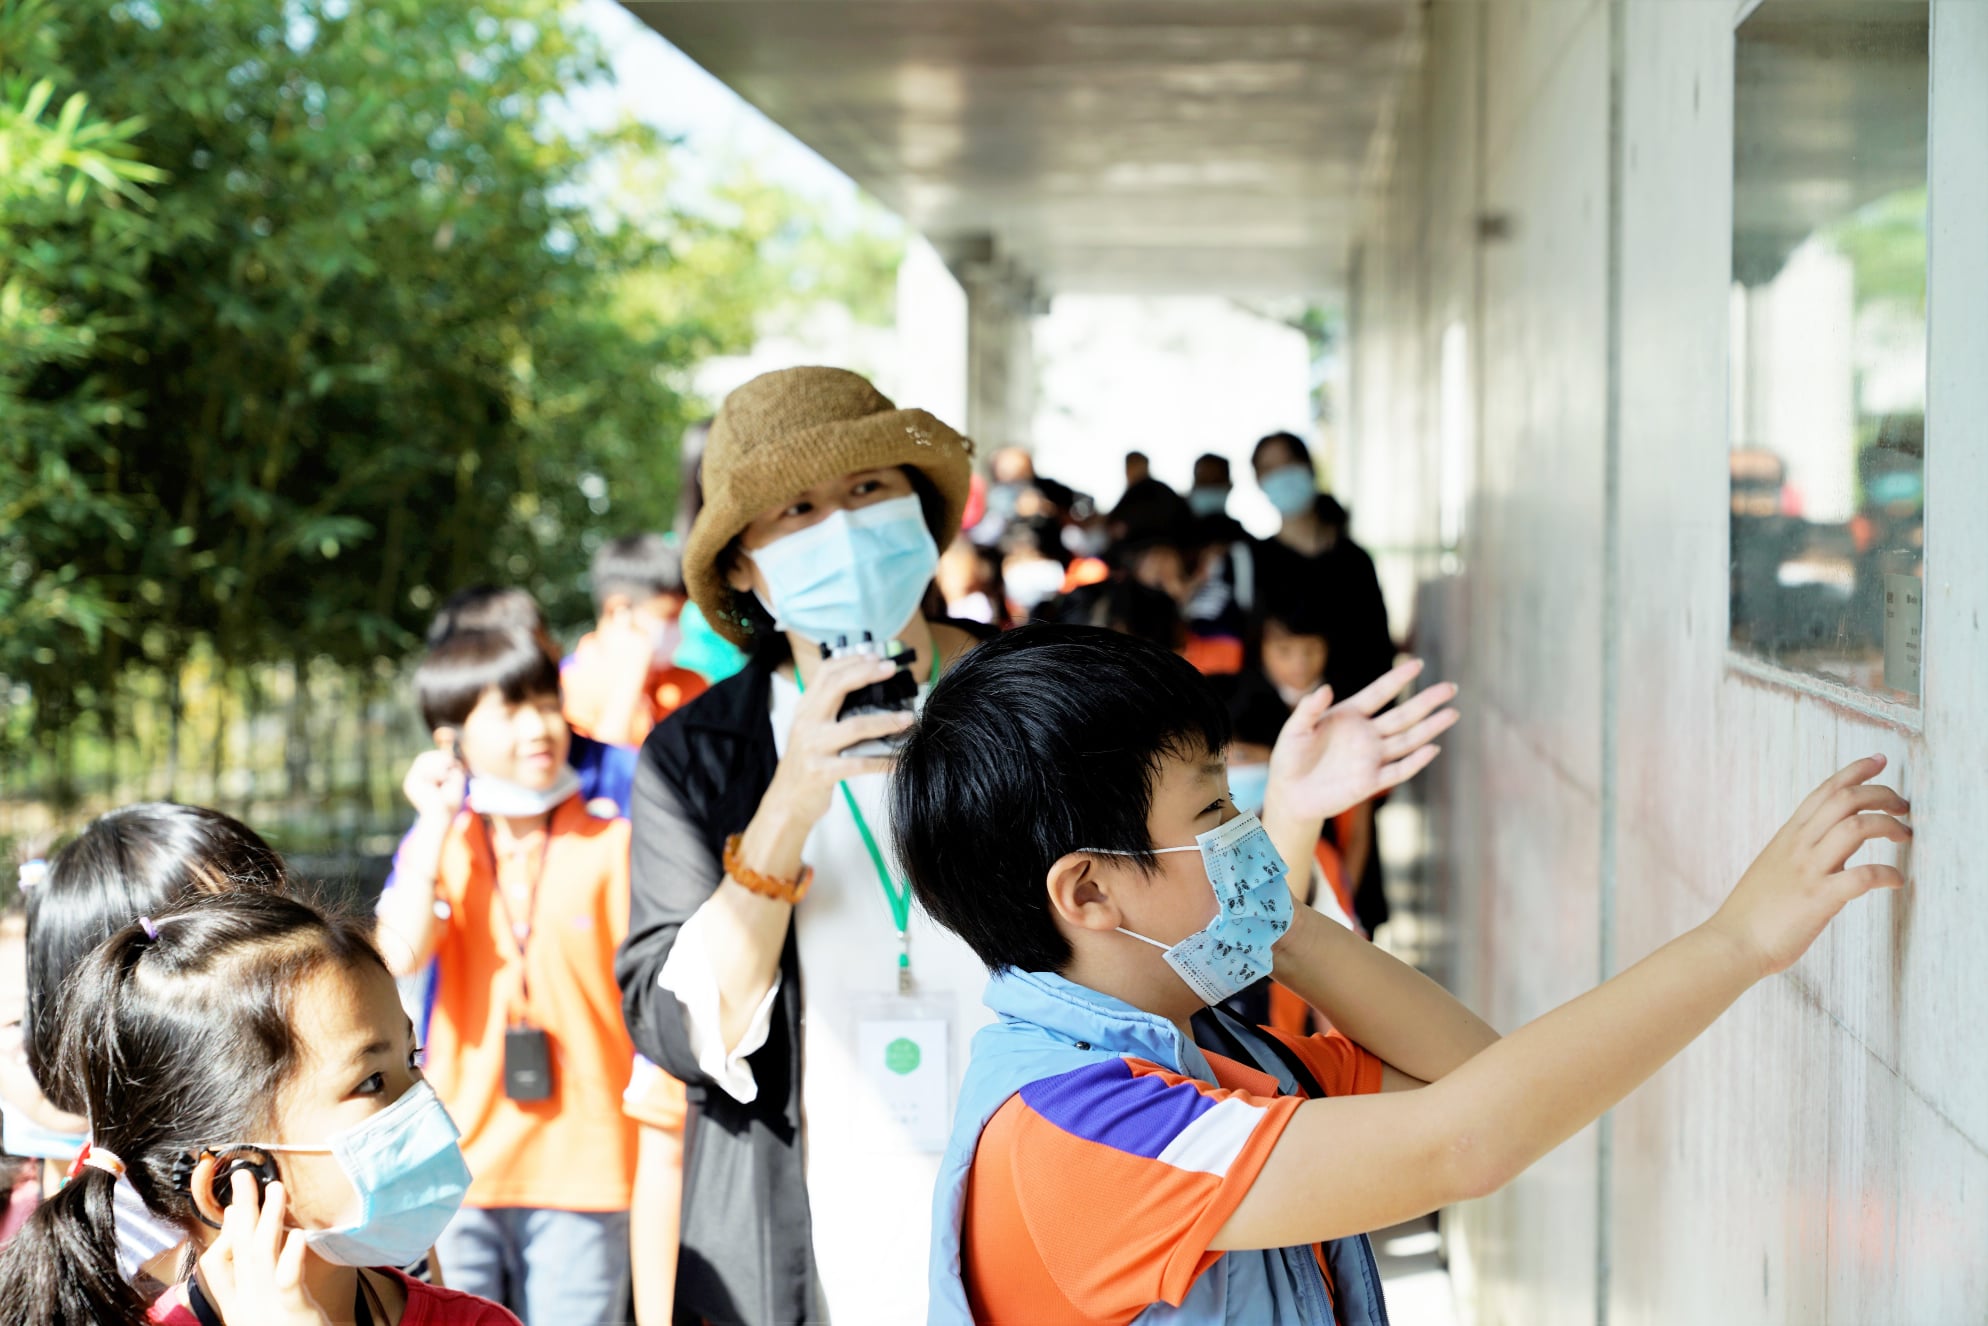 用徒步的方式孩童們便可來訪美術館觀看《廖建忠—現場》展覽。